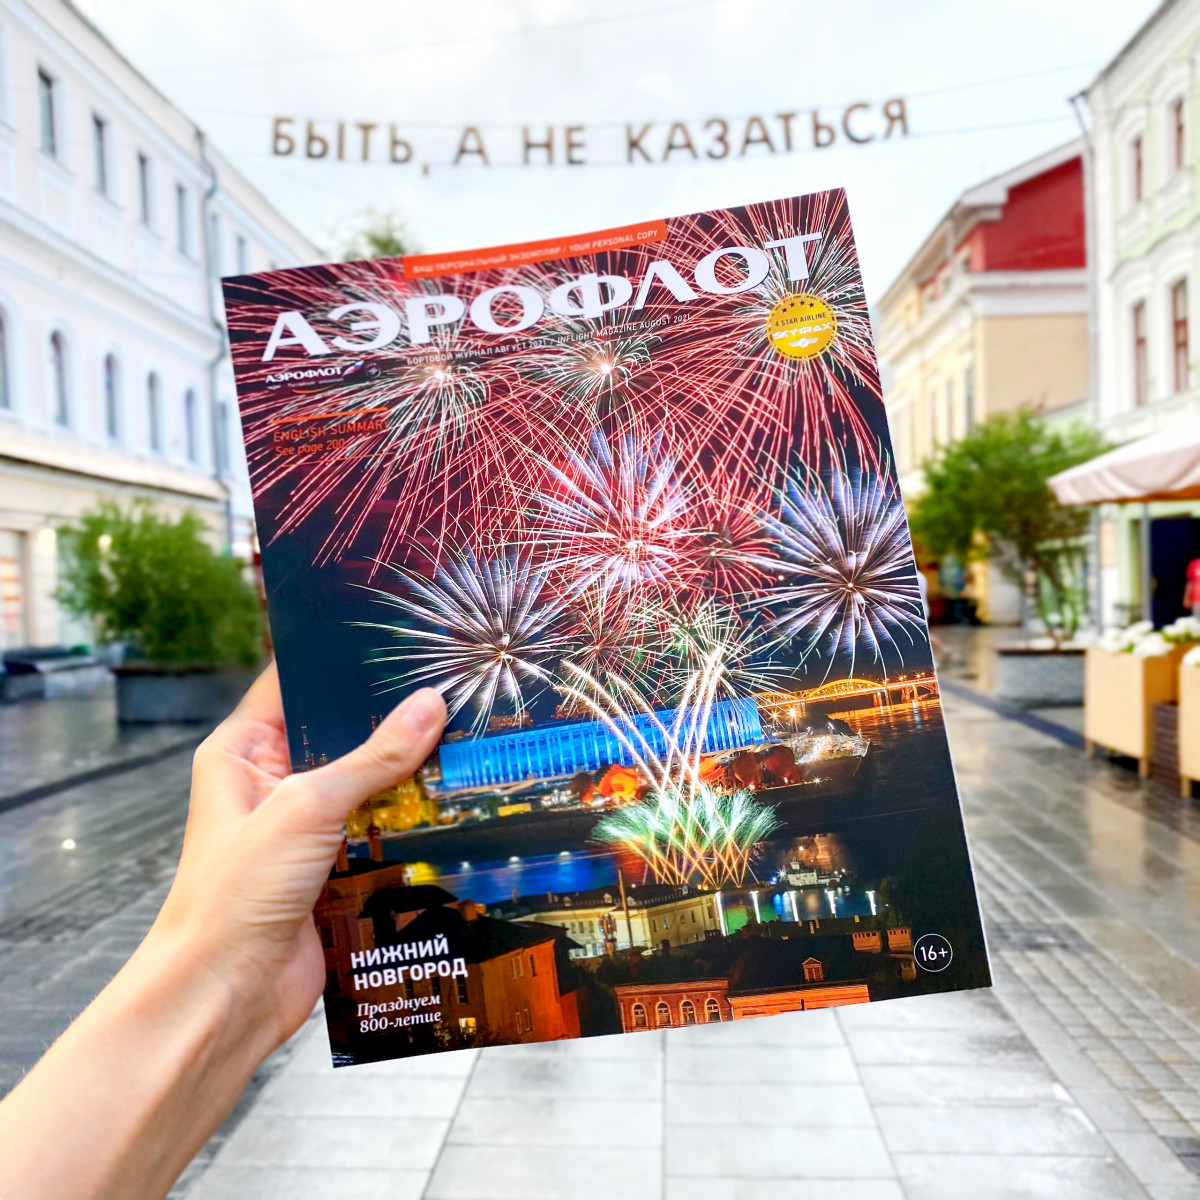 Нижний Новгород появился на обложке бортового журнала российской авиакомпании